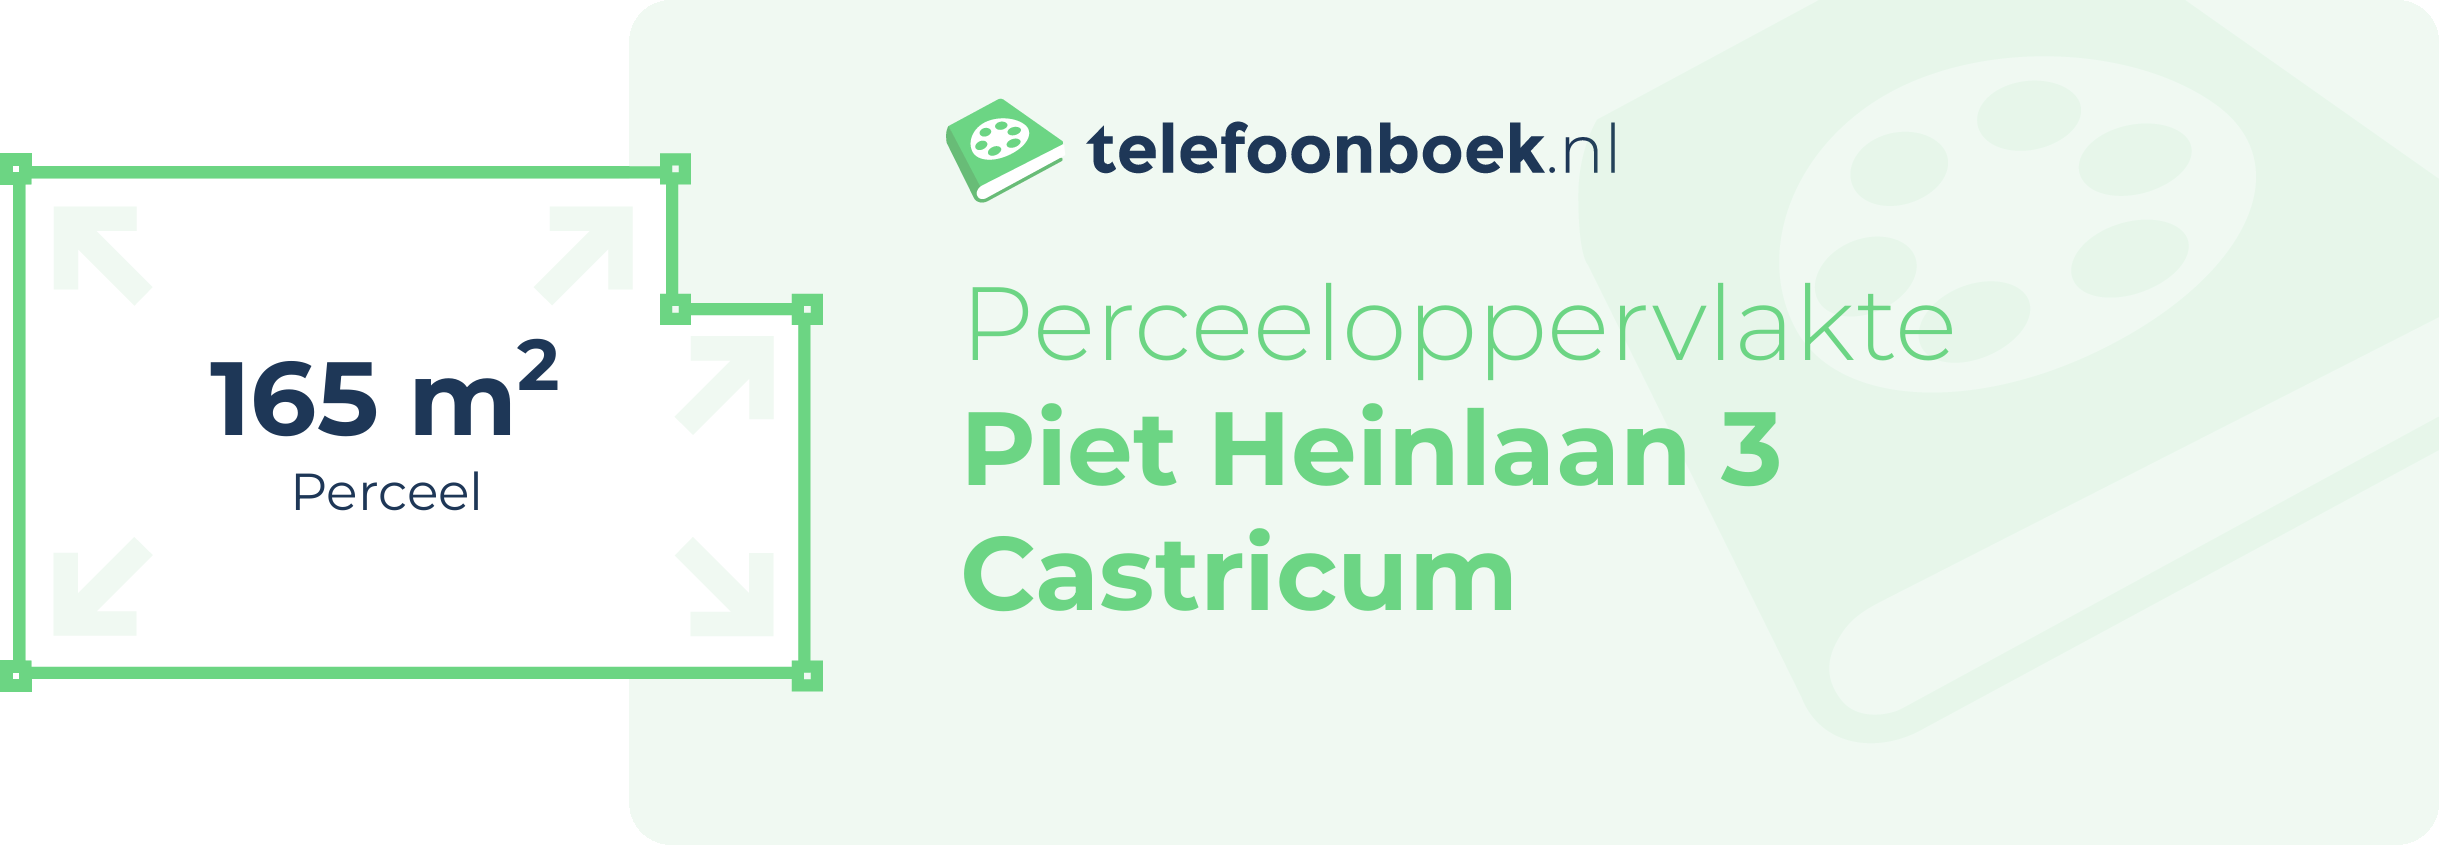 Perceeloppervlakte Piet Heinlaan 3 Castricum